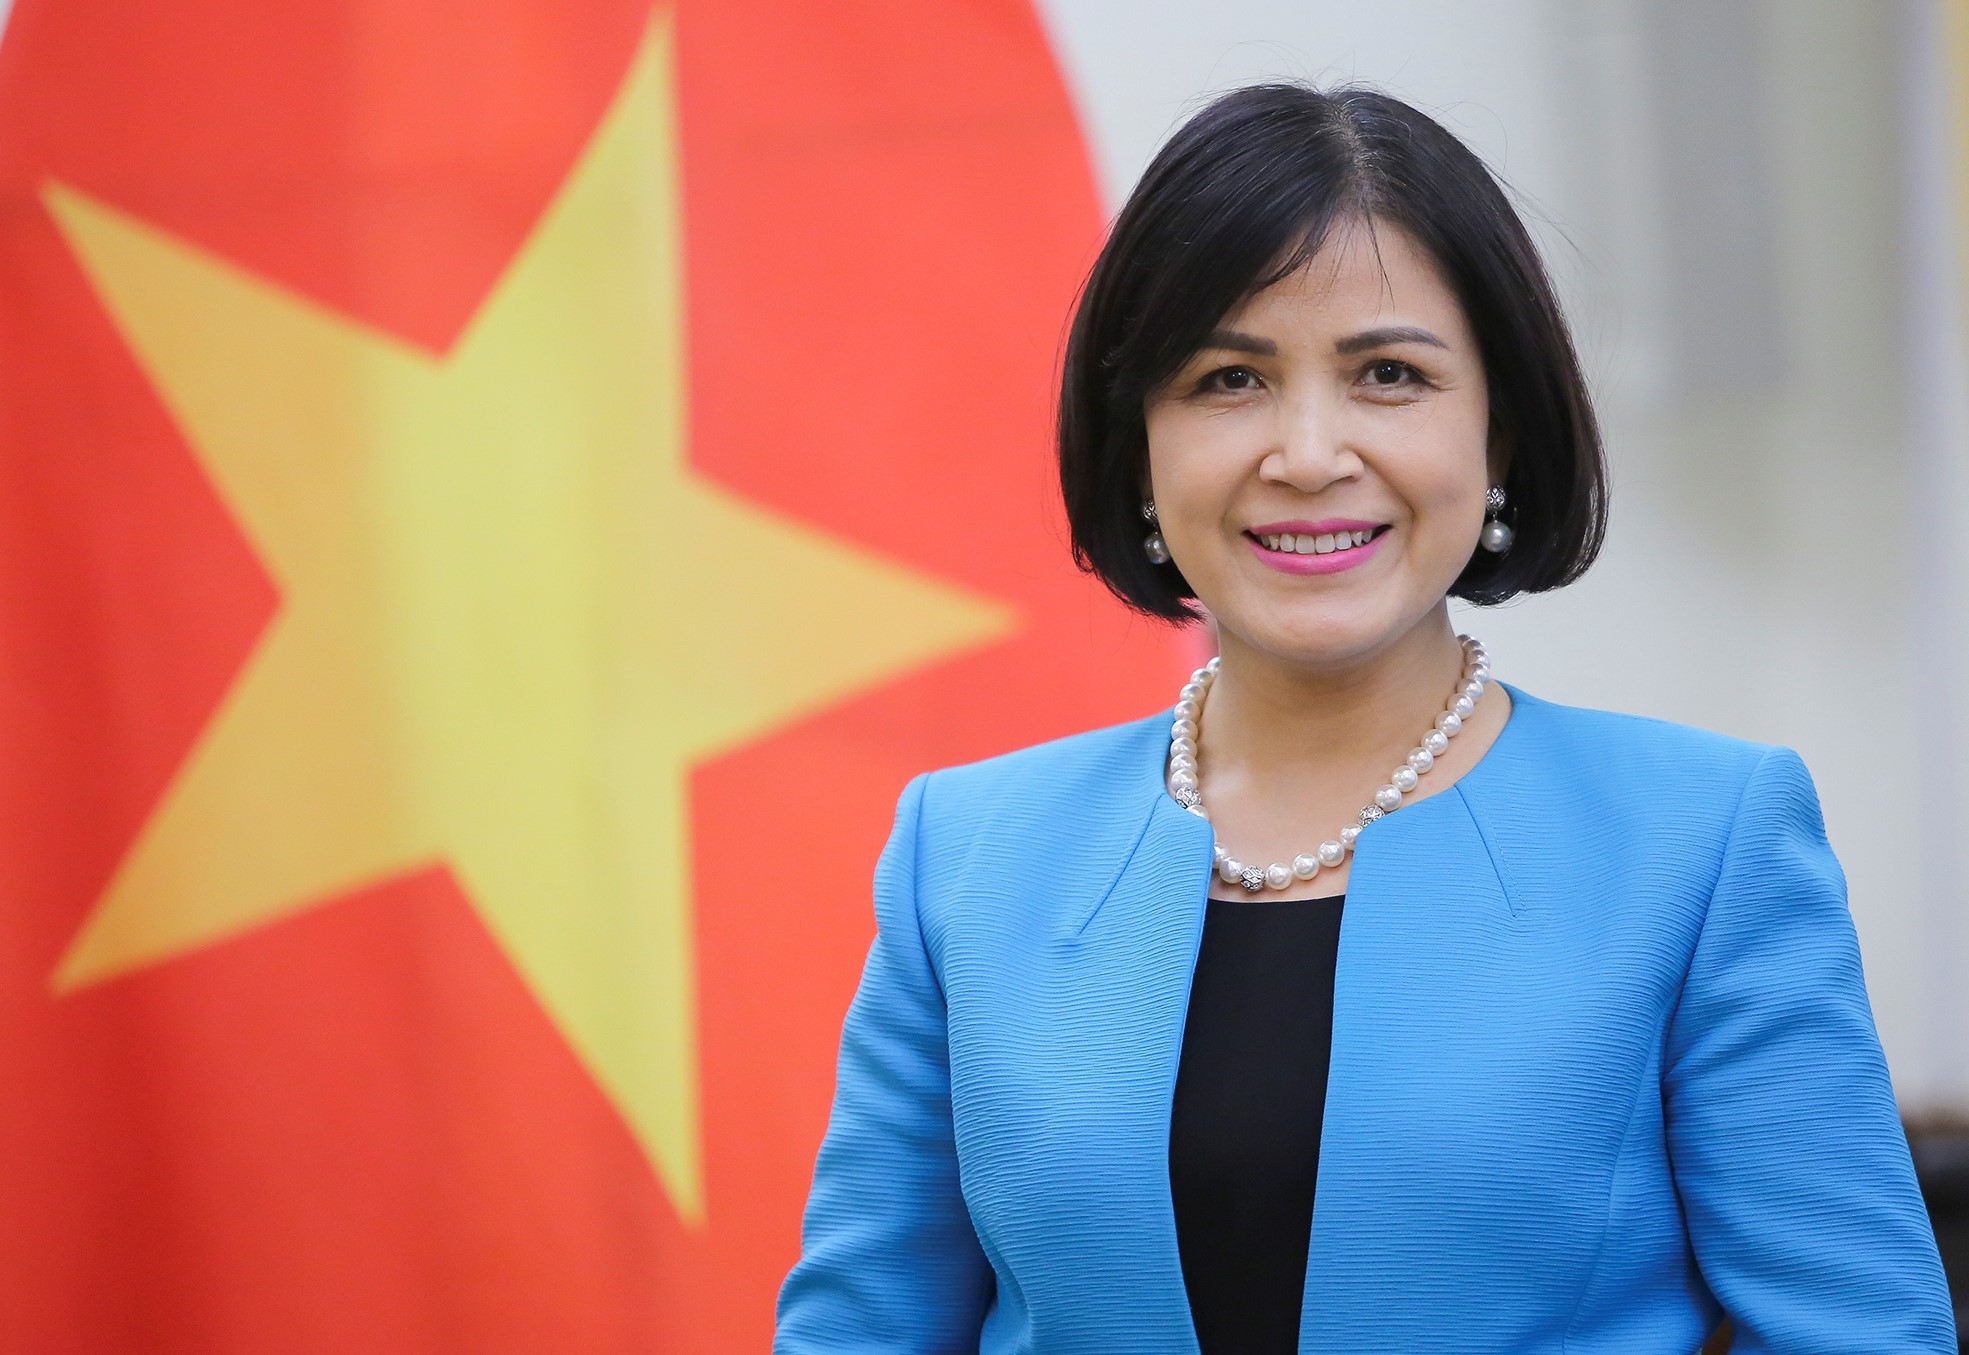 Вьетнам вносит существенный и ответственный вклад в работу Совета по правам человека